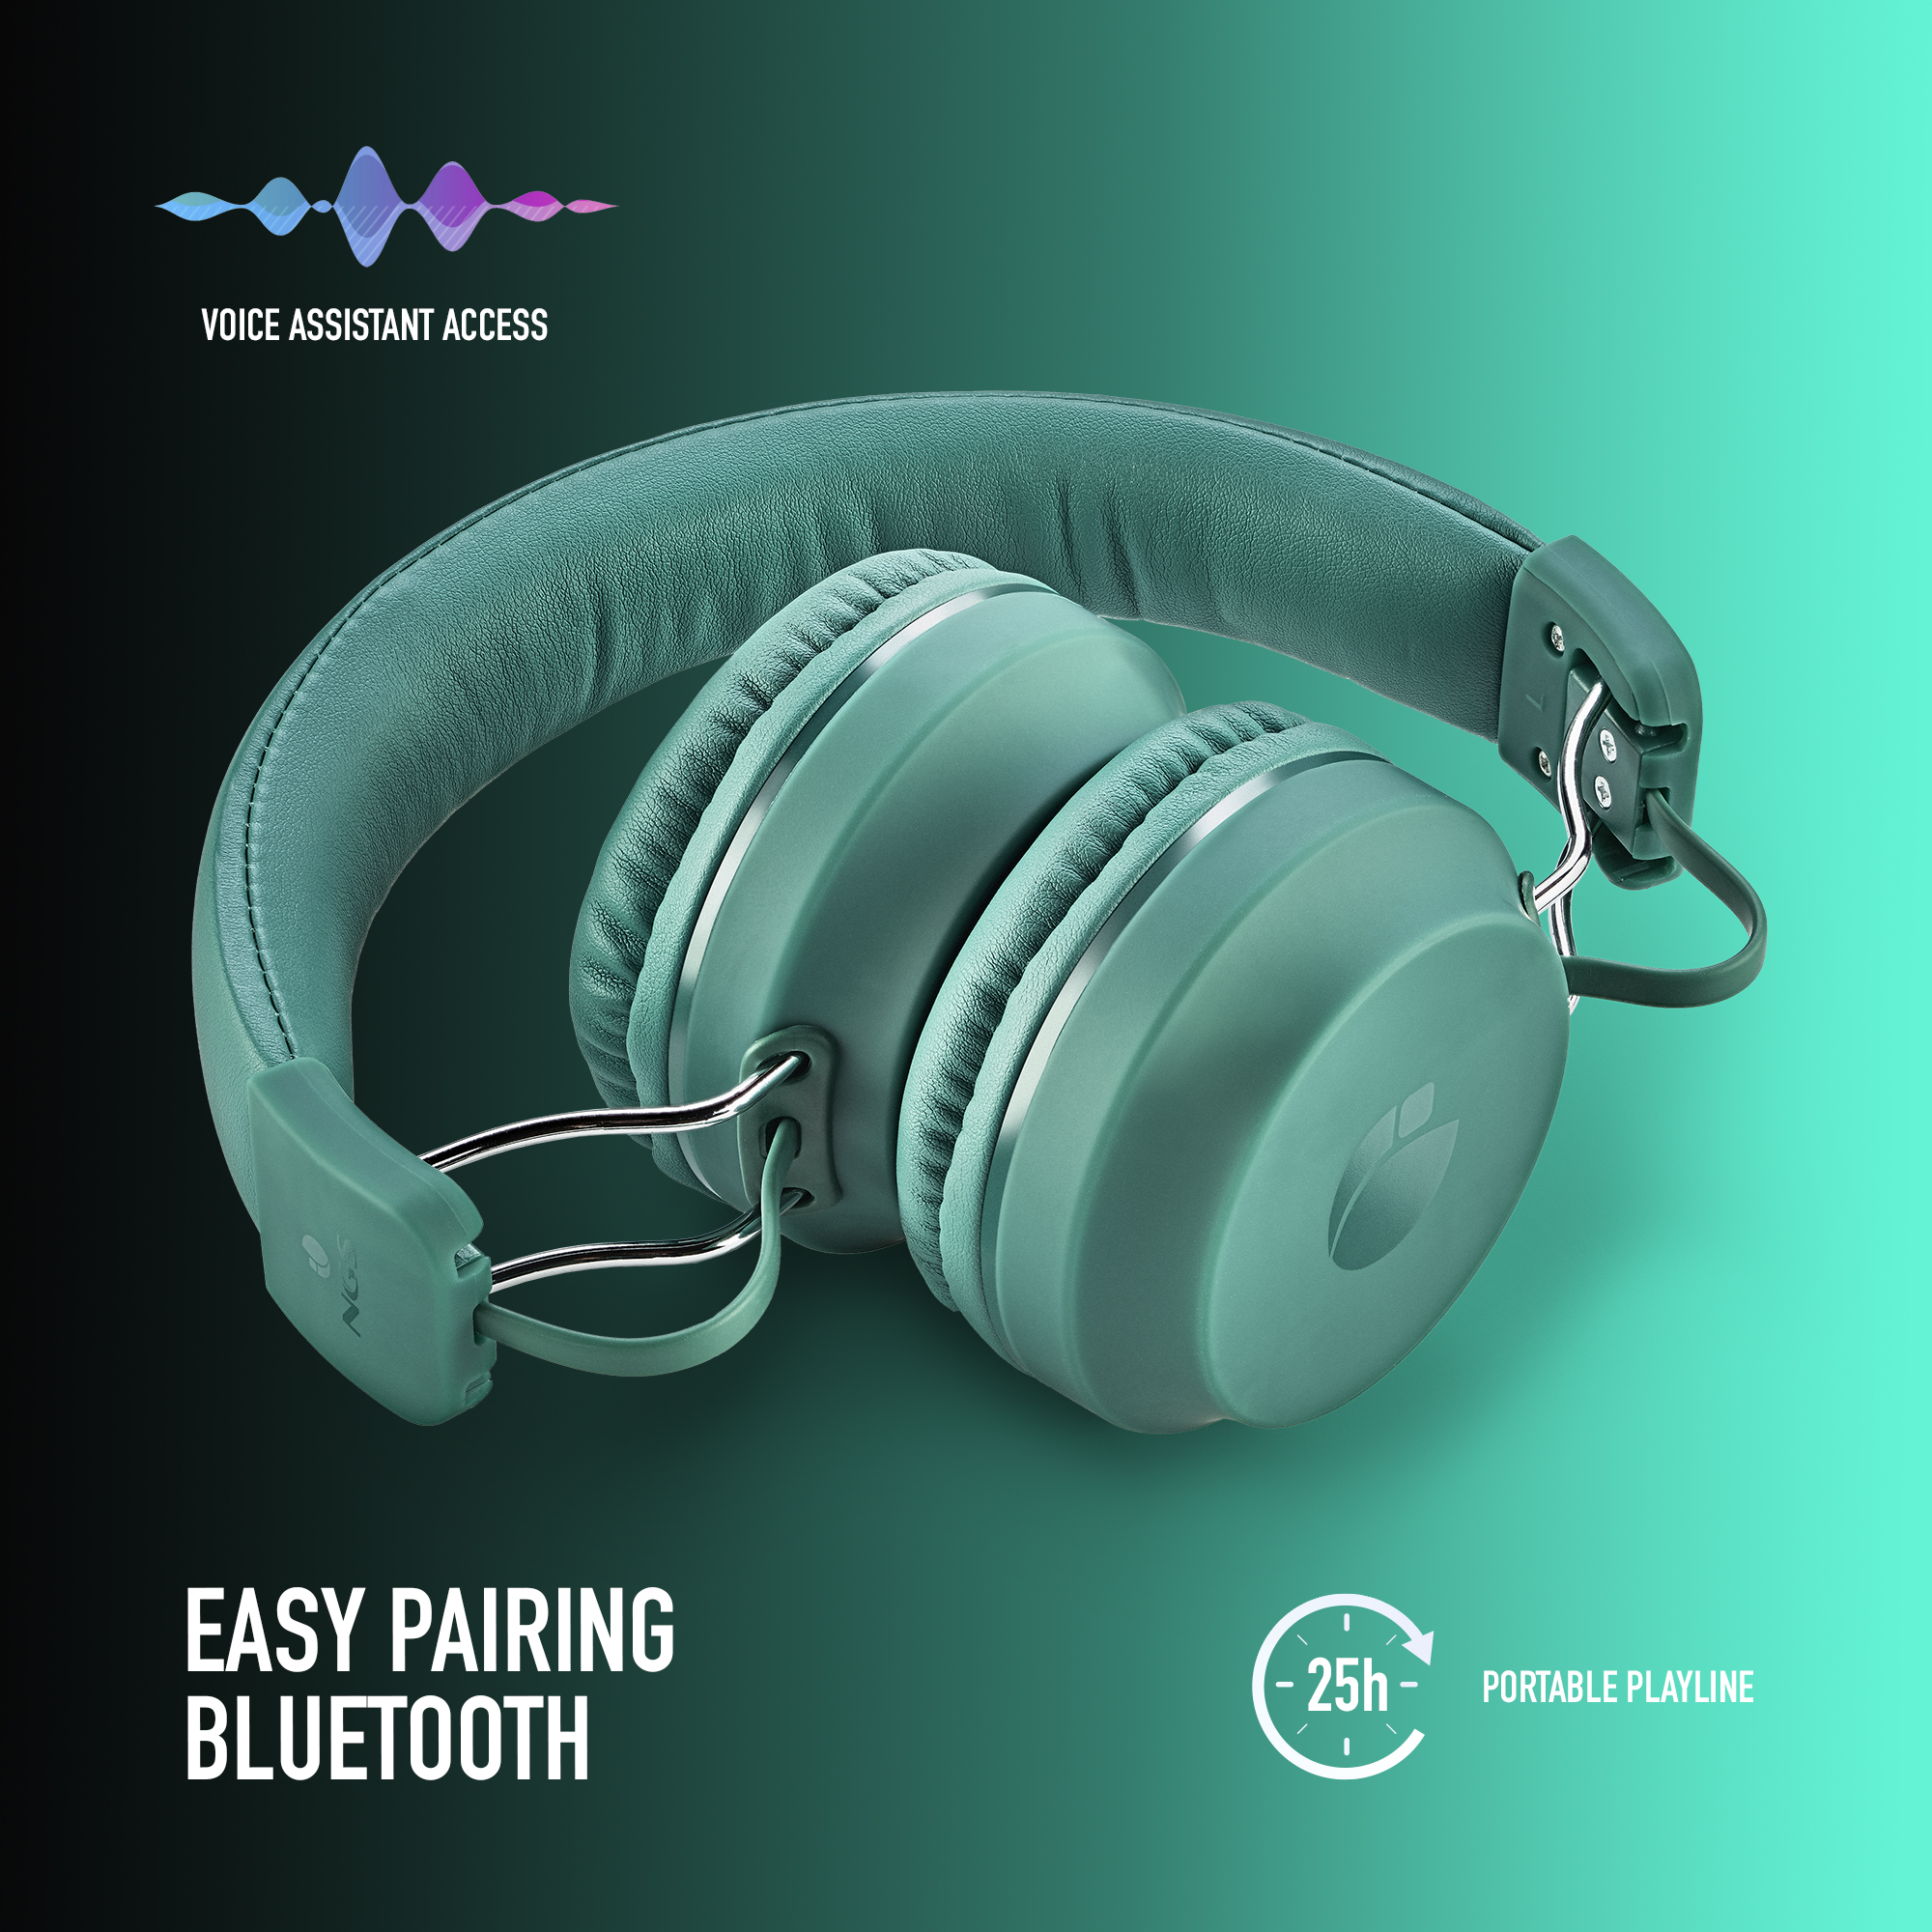 NGS ARTICACHILLTEAL, Minze Over-ear Bluetooth Kopfhörer Bluetooth